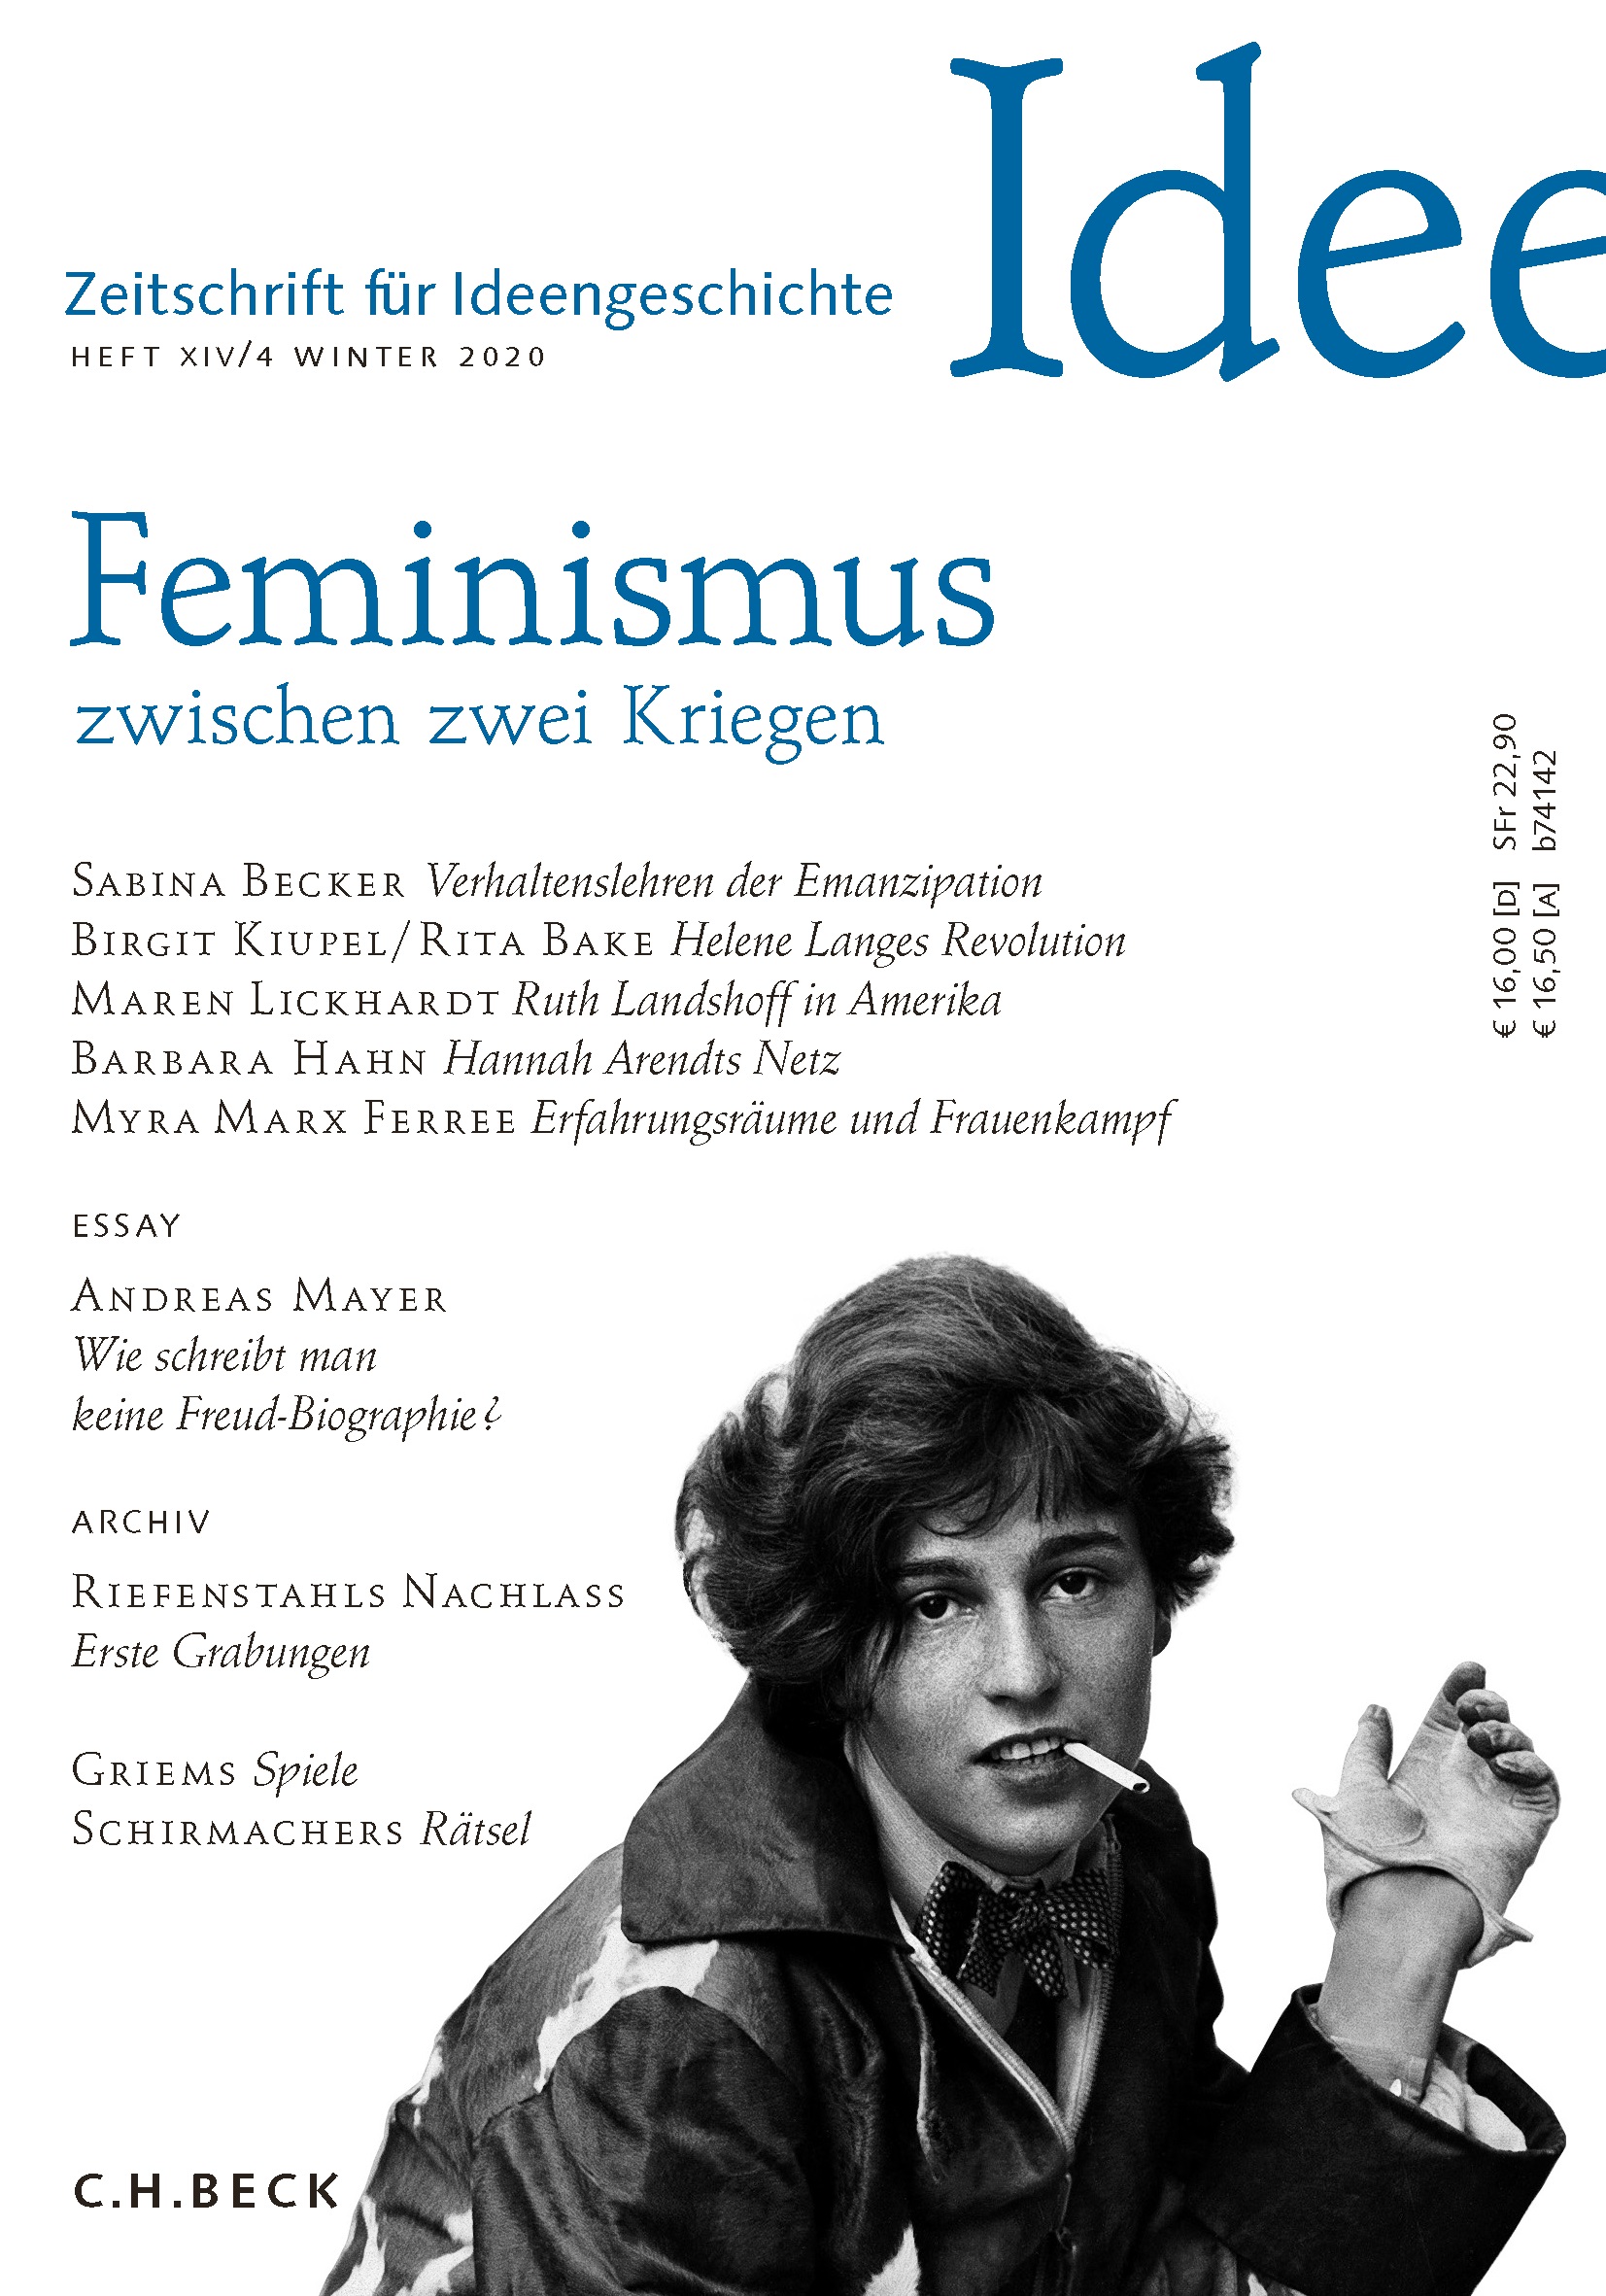 Cover von Heft XIV/4 Winter 2020